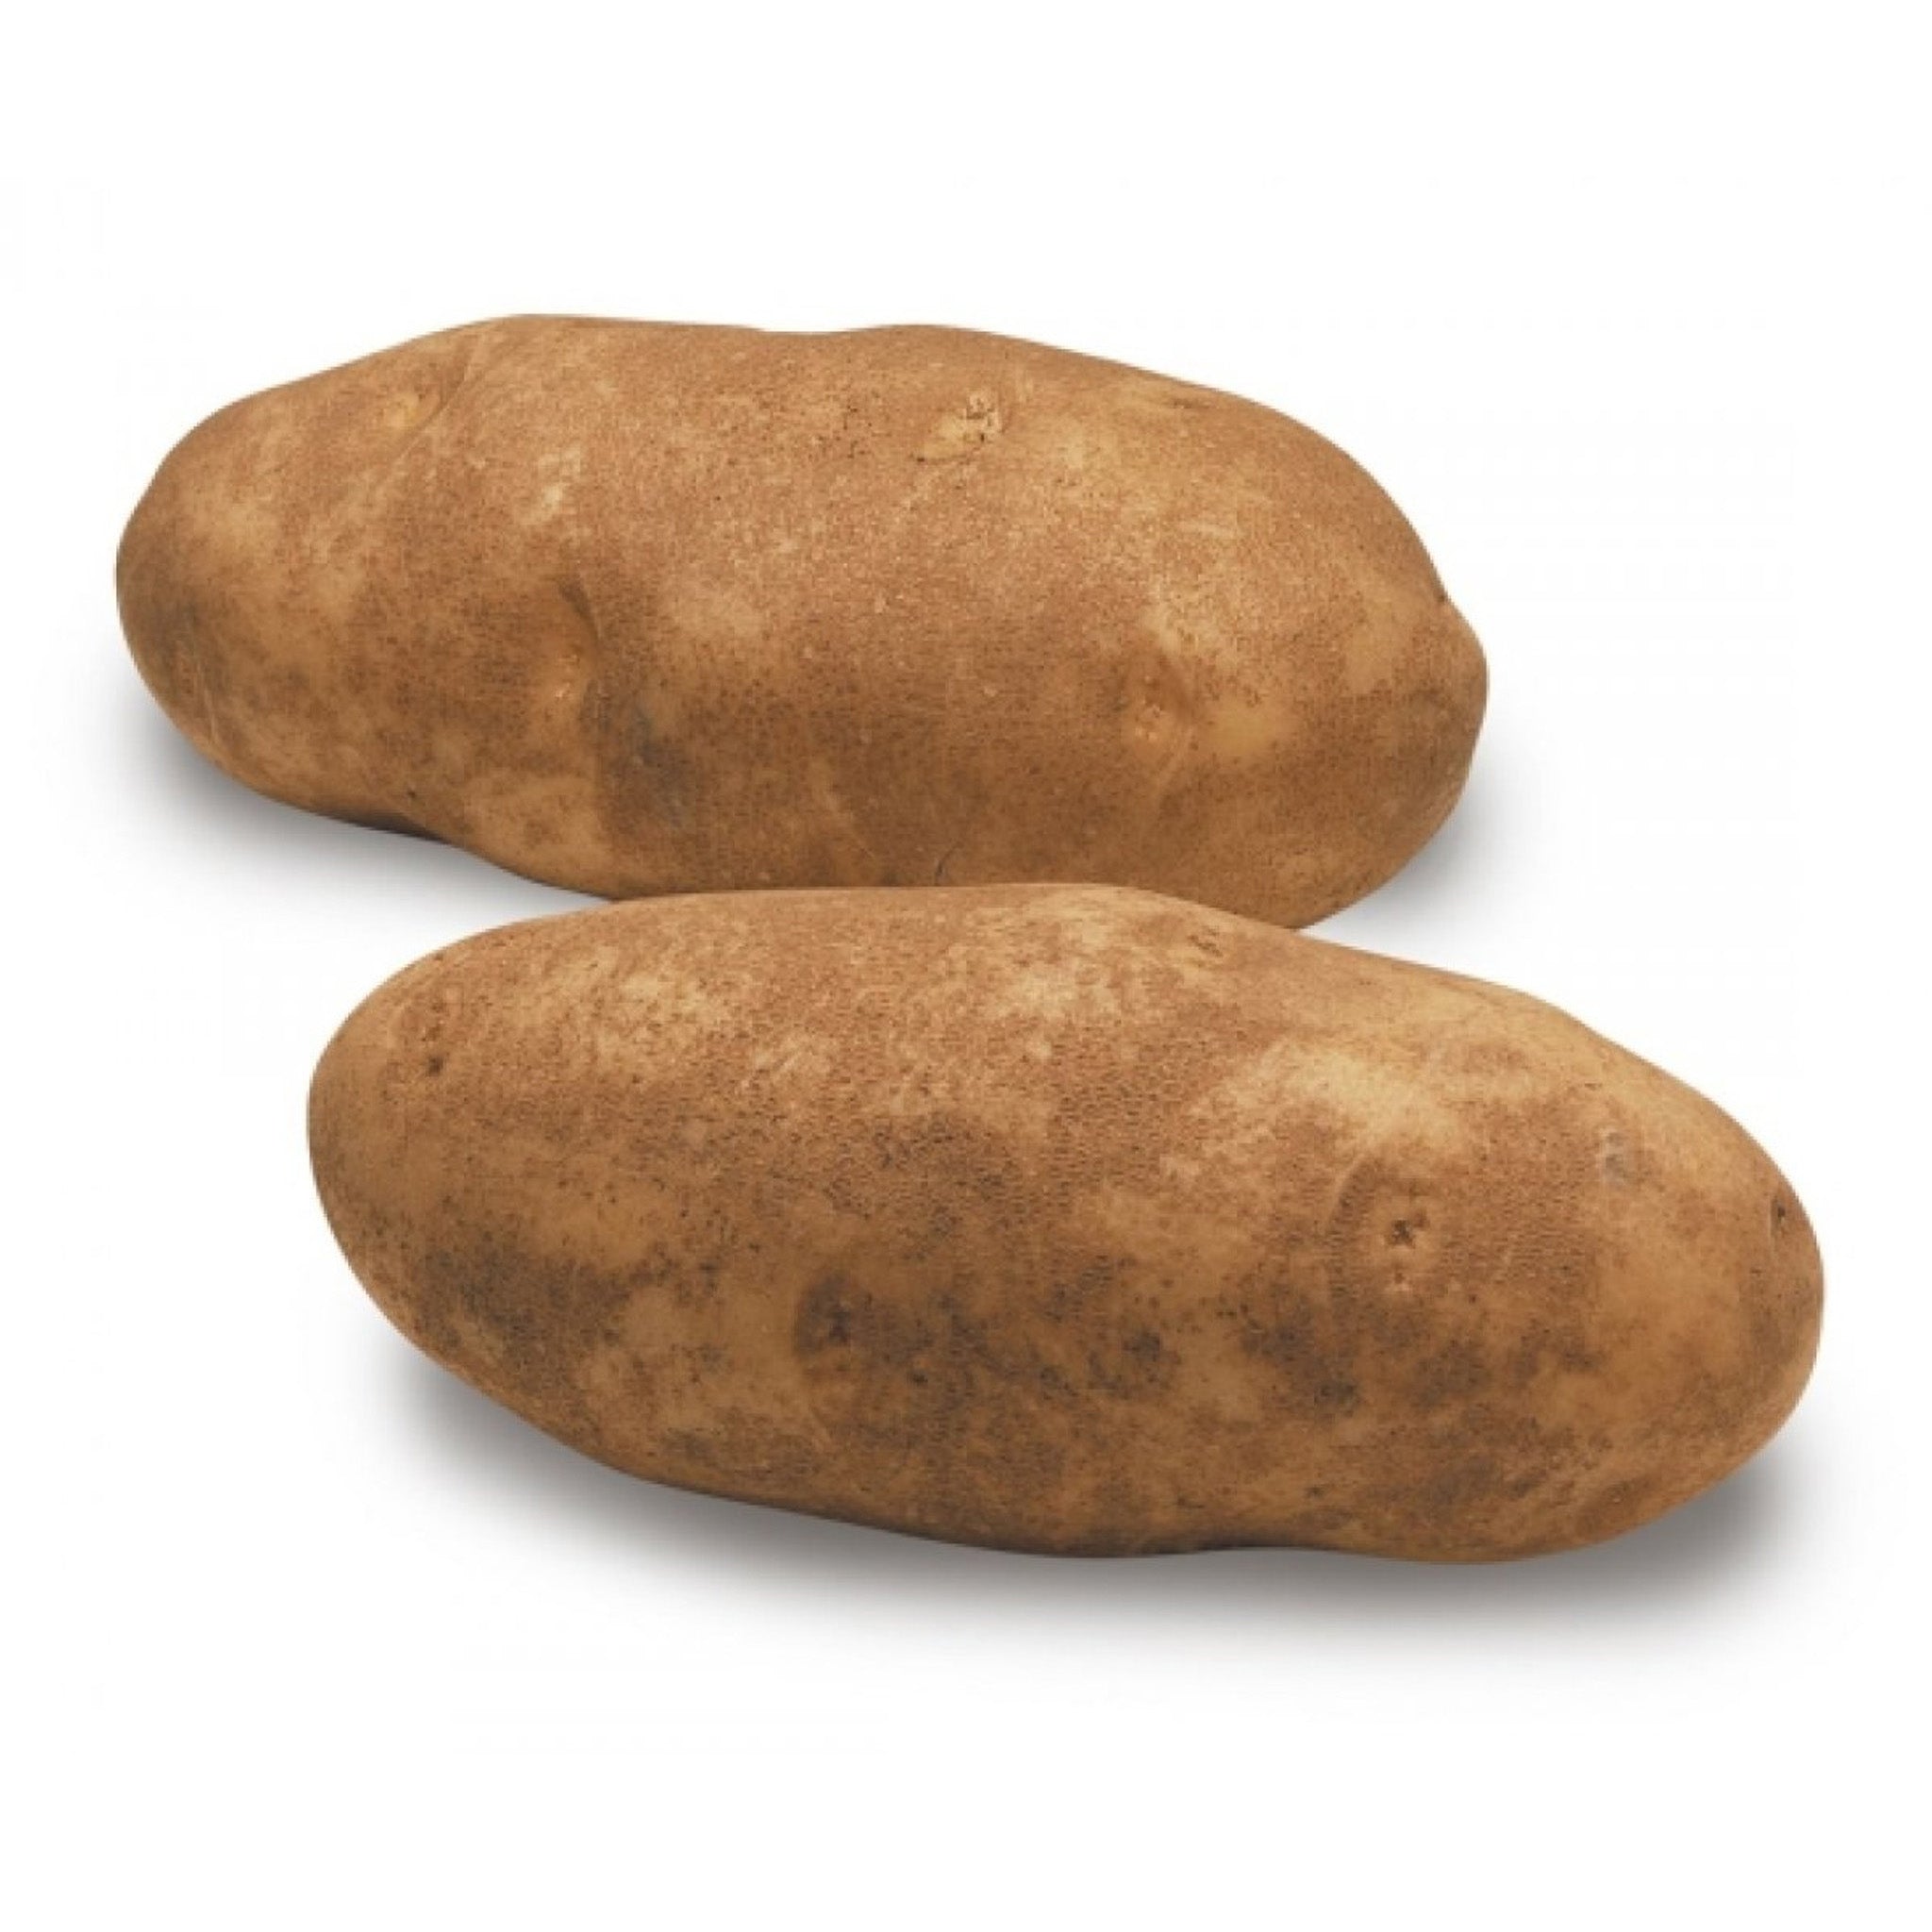 Idaho Potato, 1 lb